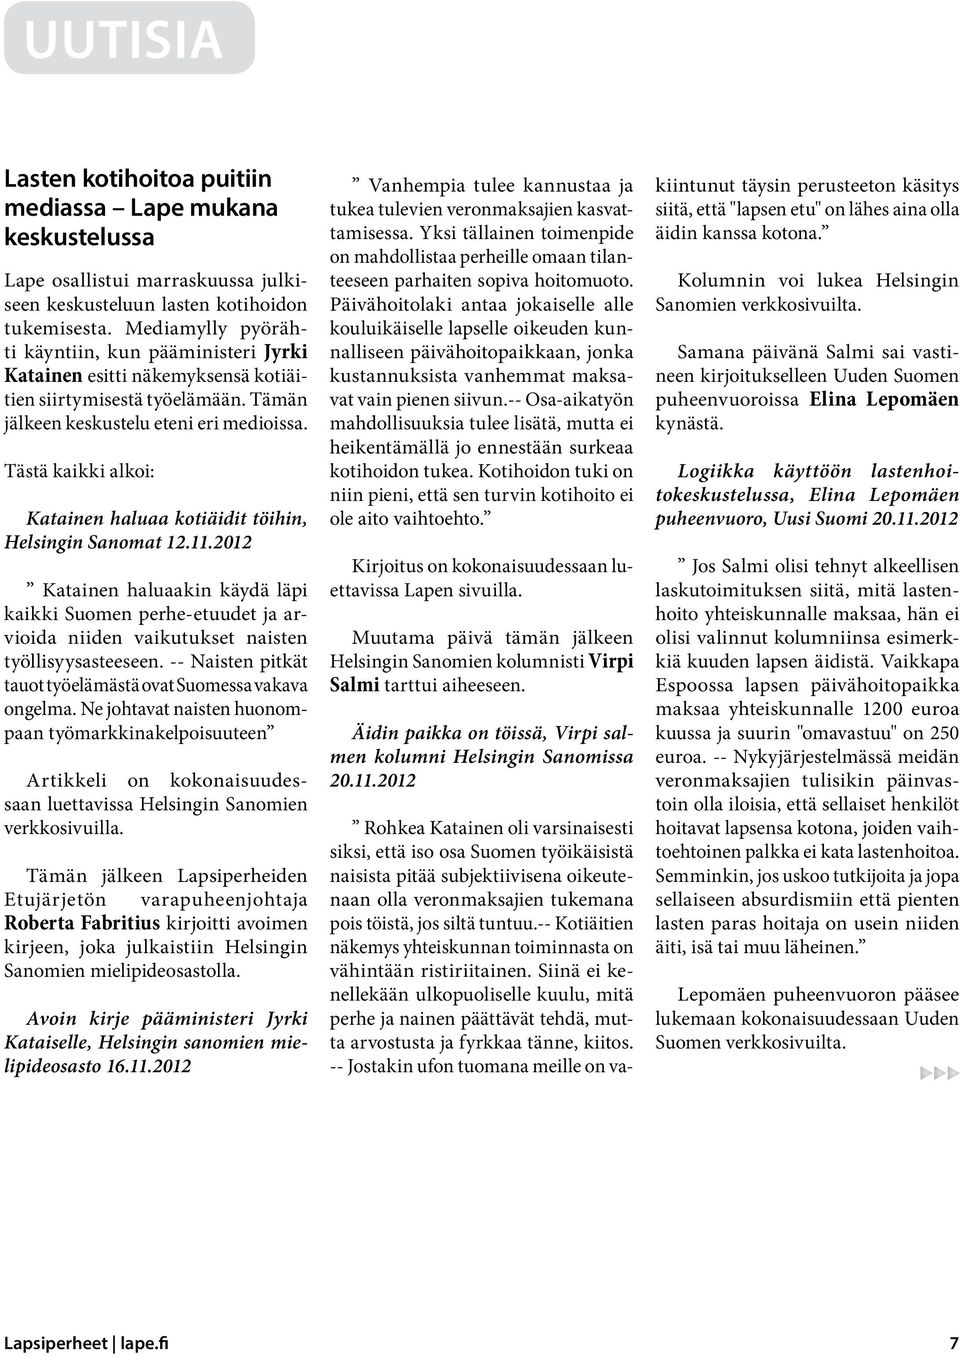 Tästä kaikki alkoi: Katainen haluaa kotiäidit töihin, Helsingin Sanomat 12.11.2012 Katainen haluaakin käydä läpi kaikki Suomen perhe-etuudet ja arvioida niiden vaikutukset naisten työllisyysasteeseen.